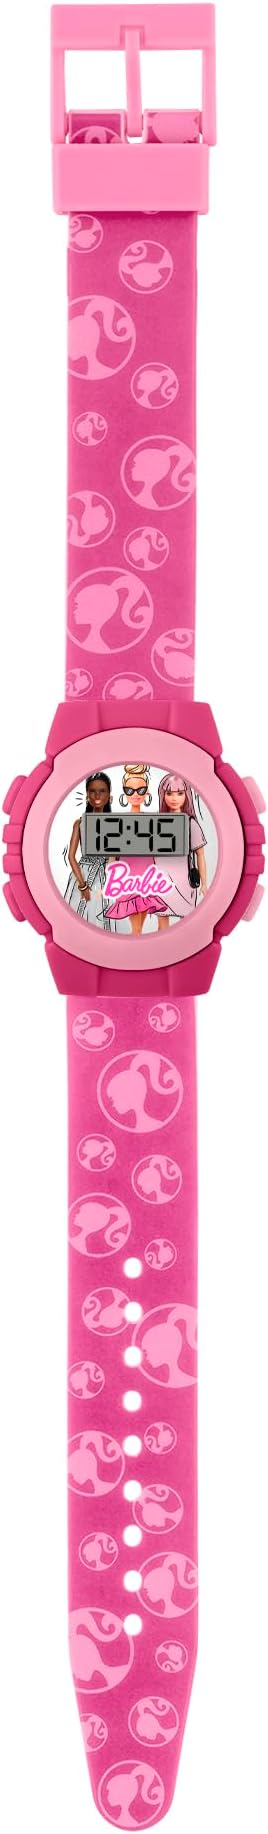 Peers Hardy - Barbie Pink Digital Watch